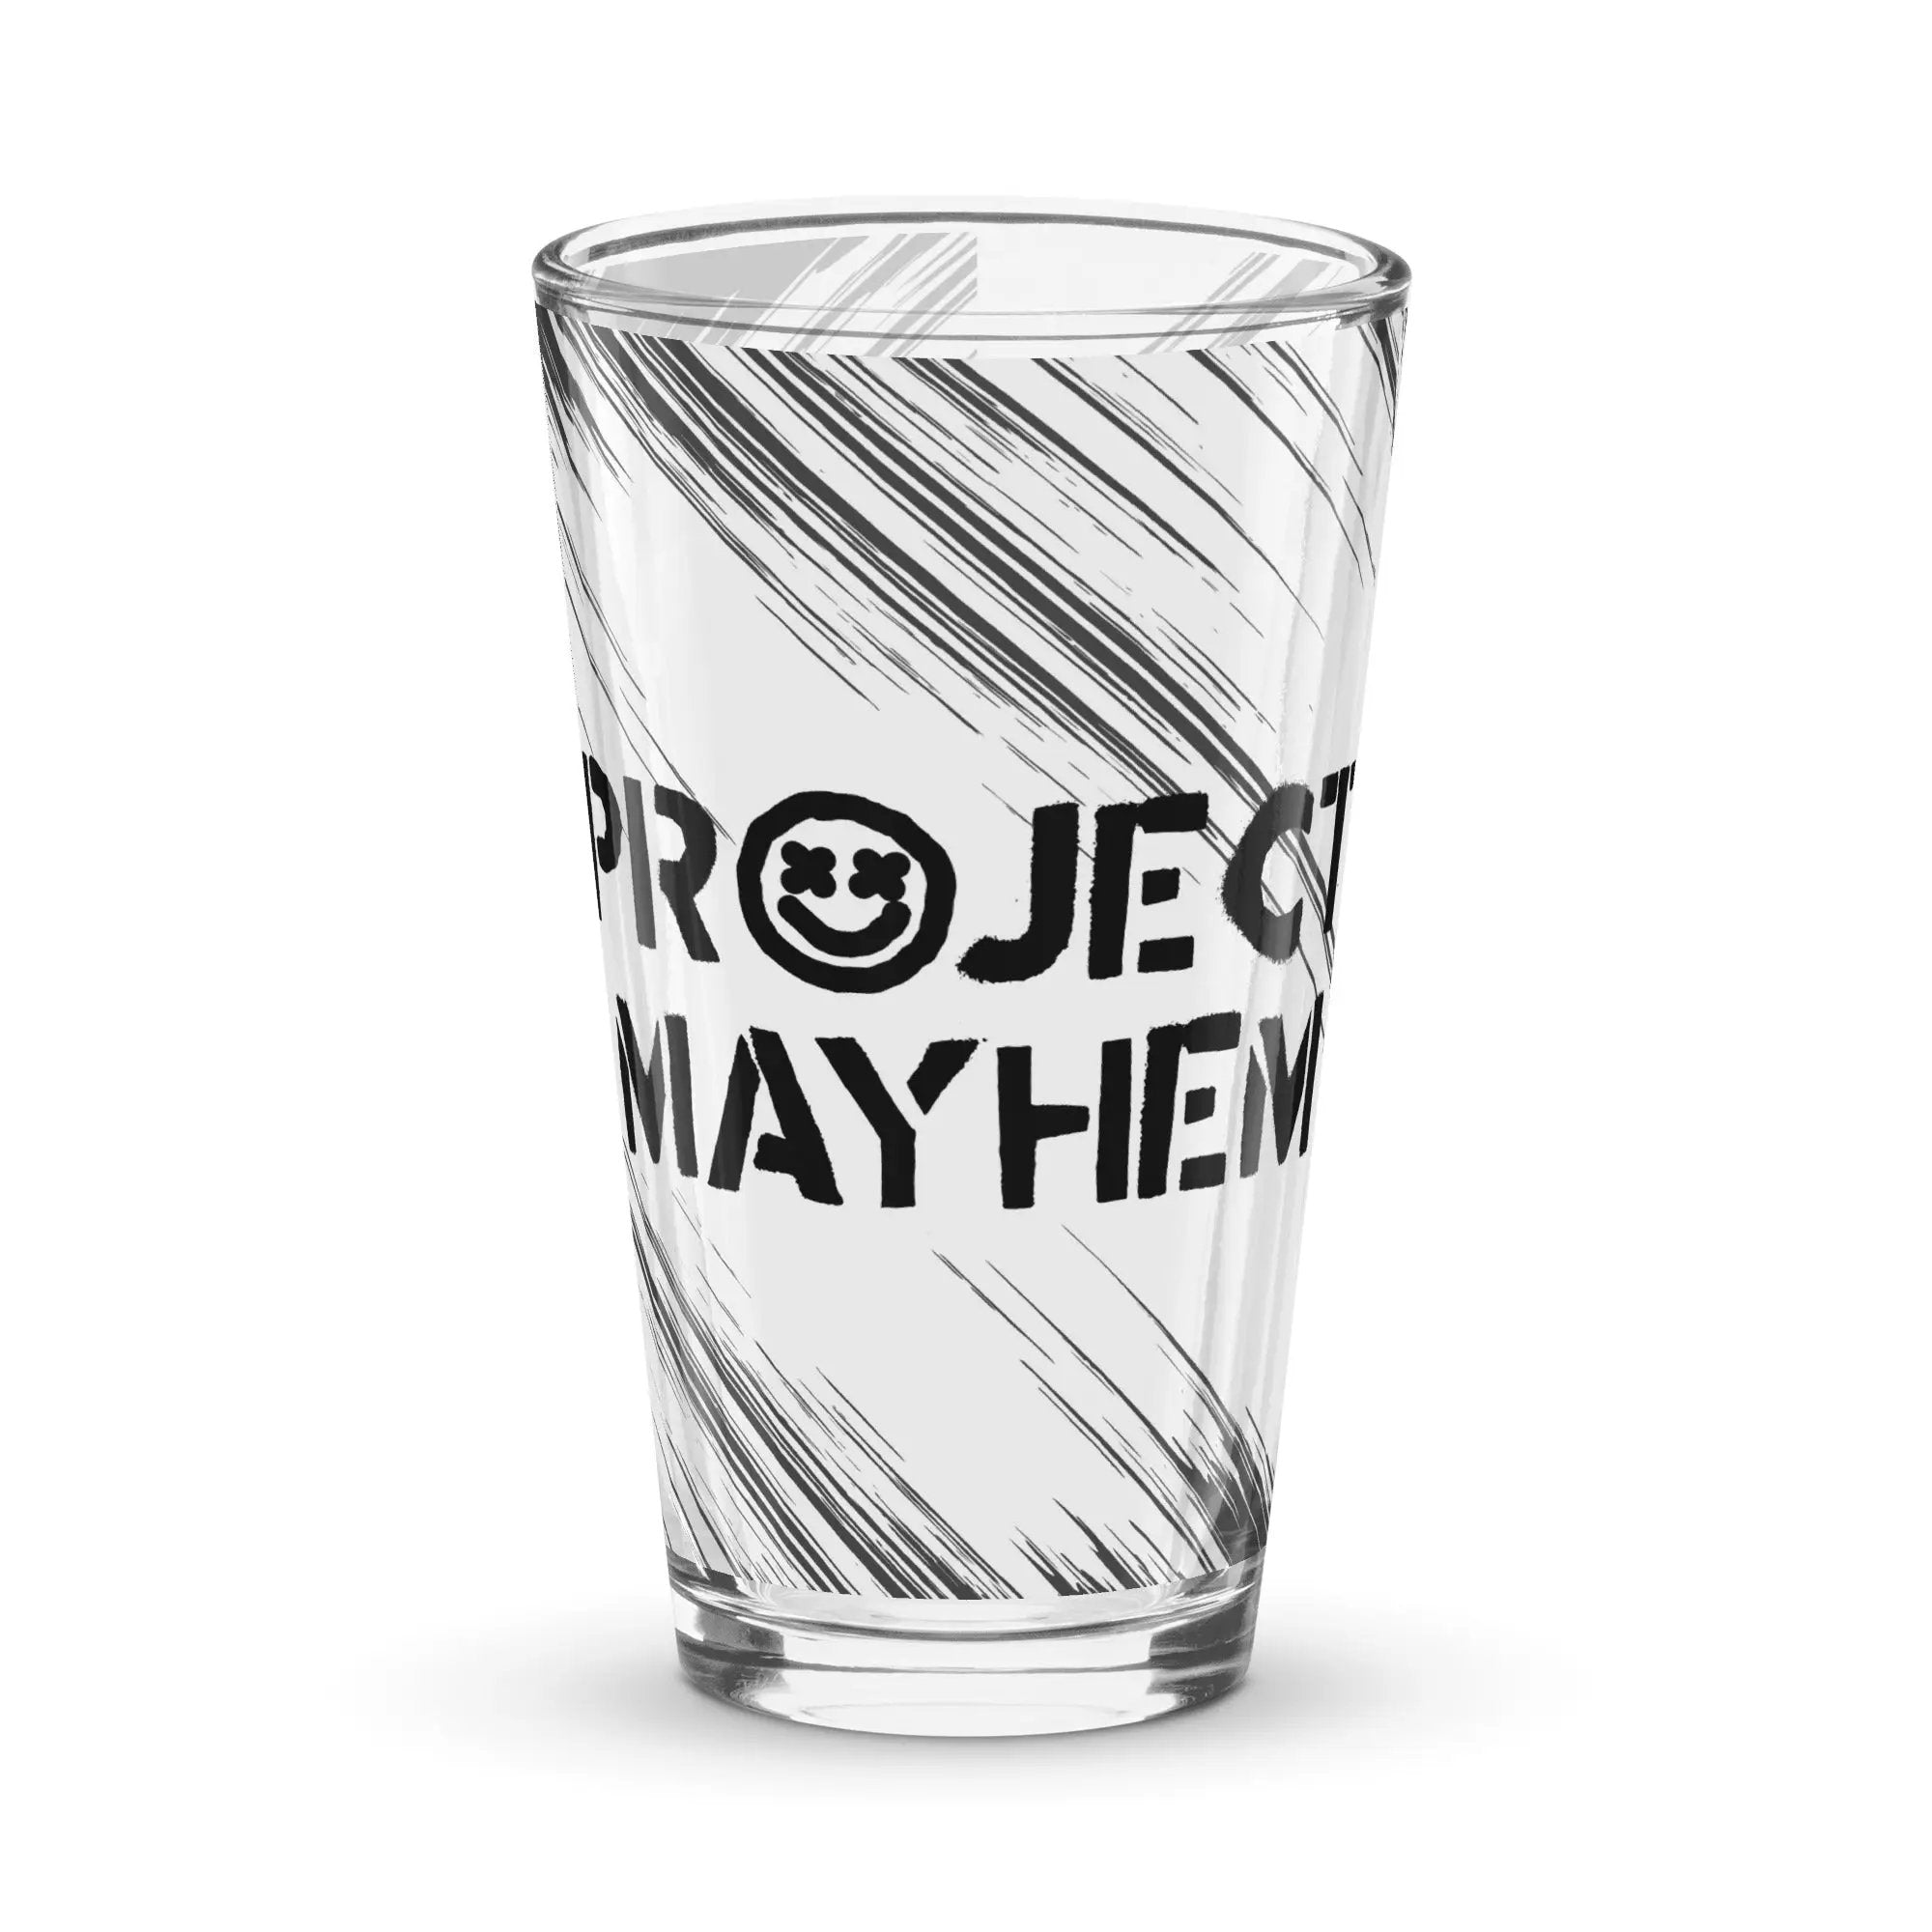 Project Mayhem  pint glass